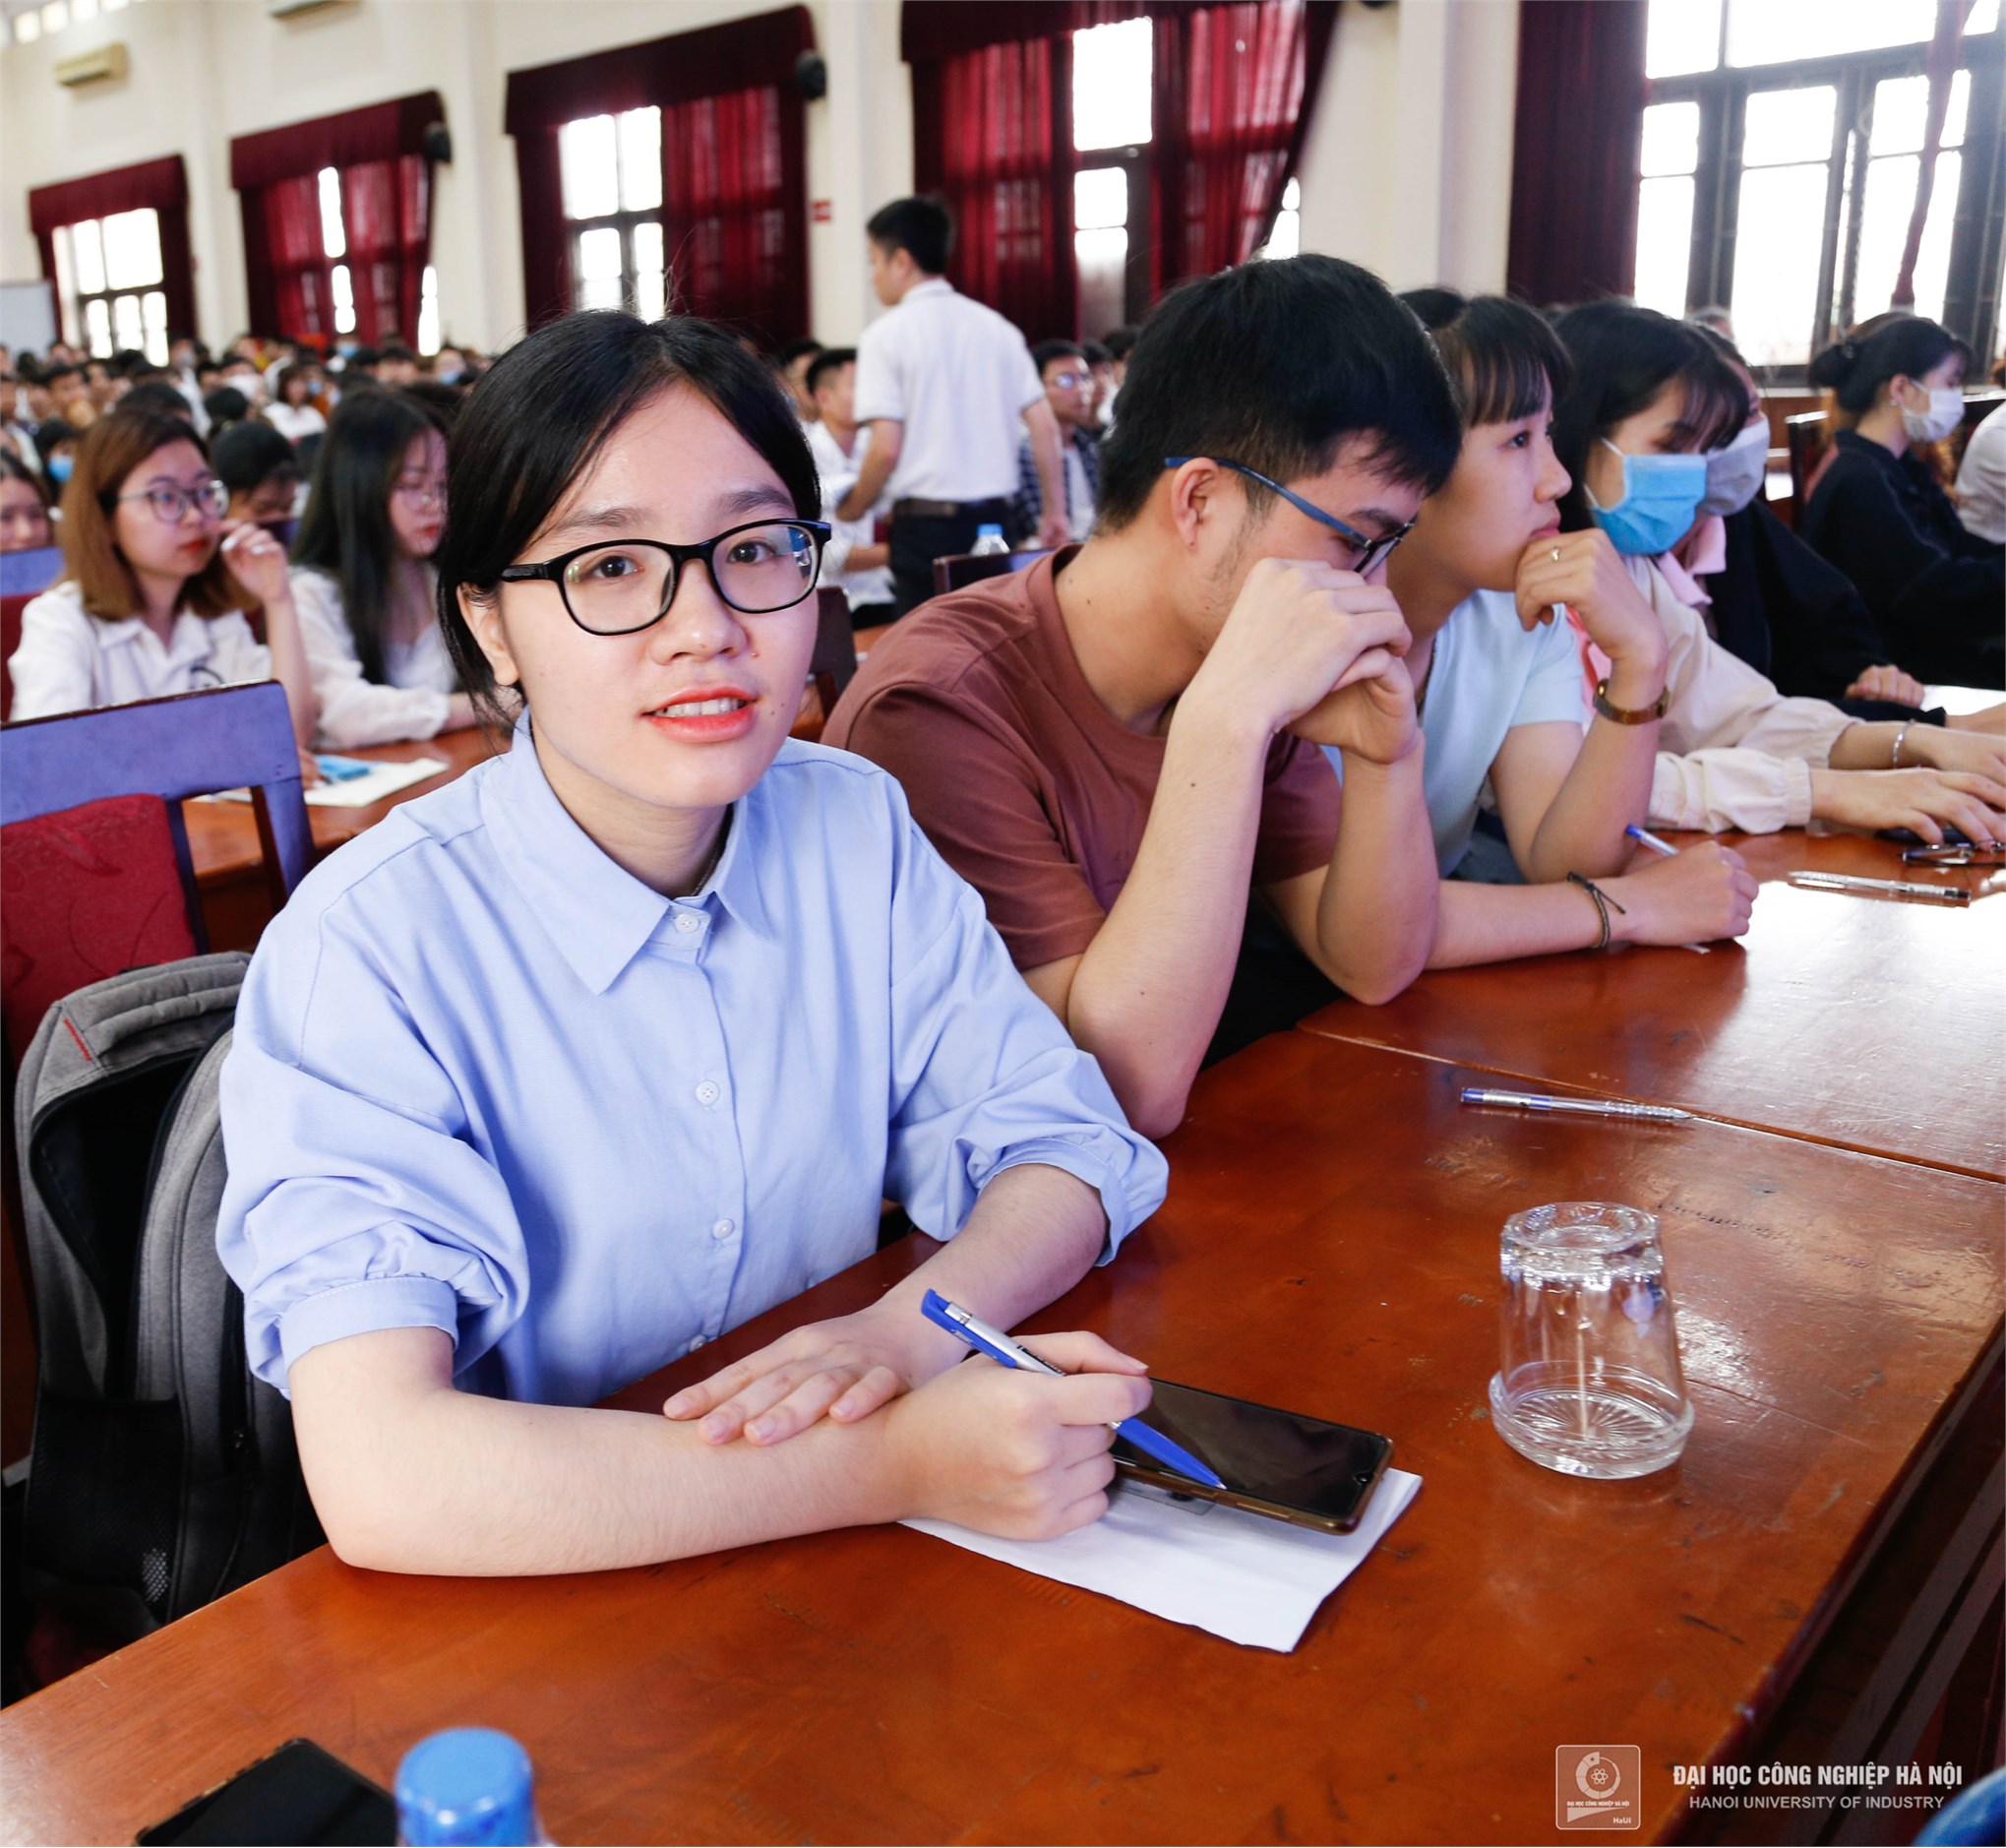 1000 cơ hội việc làm tại Tập đoàn Khoa học Kỹ thuật Hồng Hải Foxconn dành cho sinh viên Đại học Công nghiệp Hà Nội